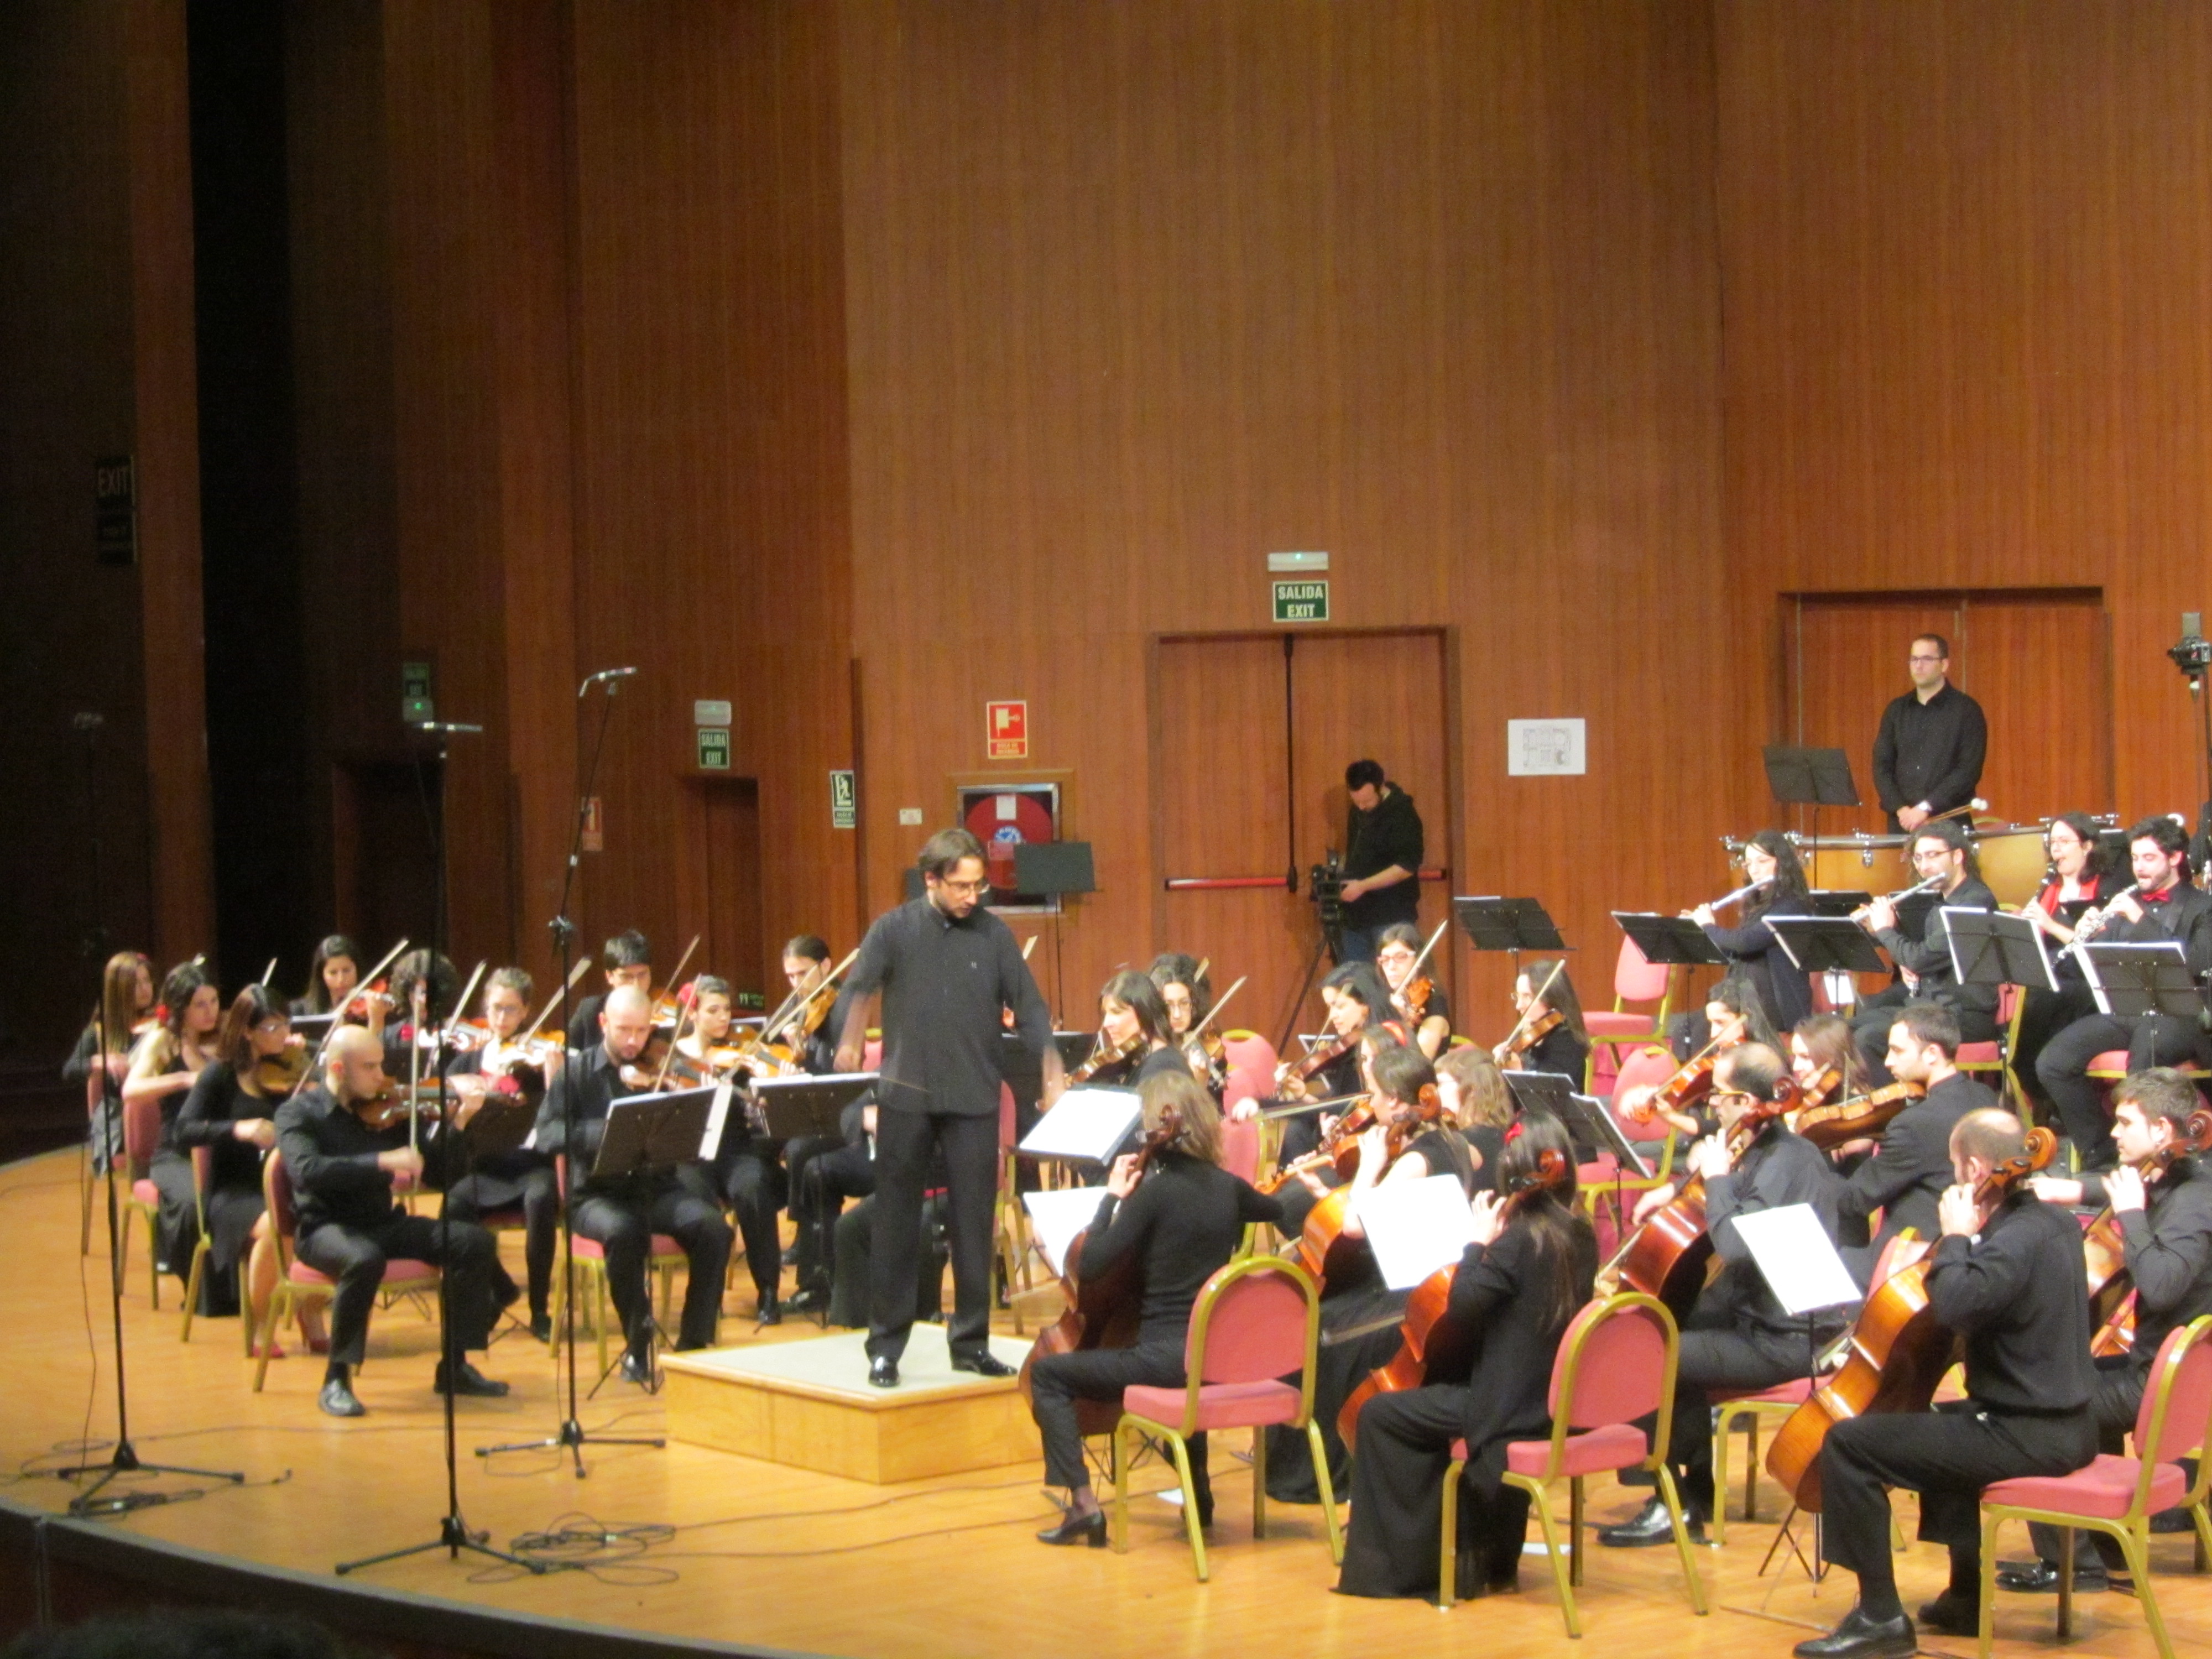 Presentación de Marmúsica en Madrid con un concierto de música sinfónica